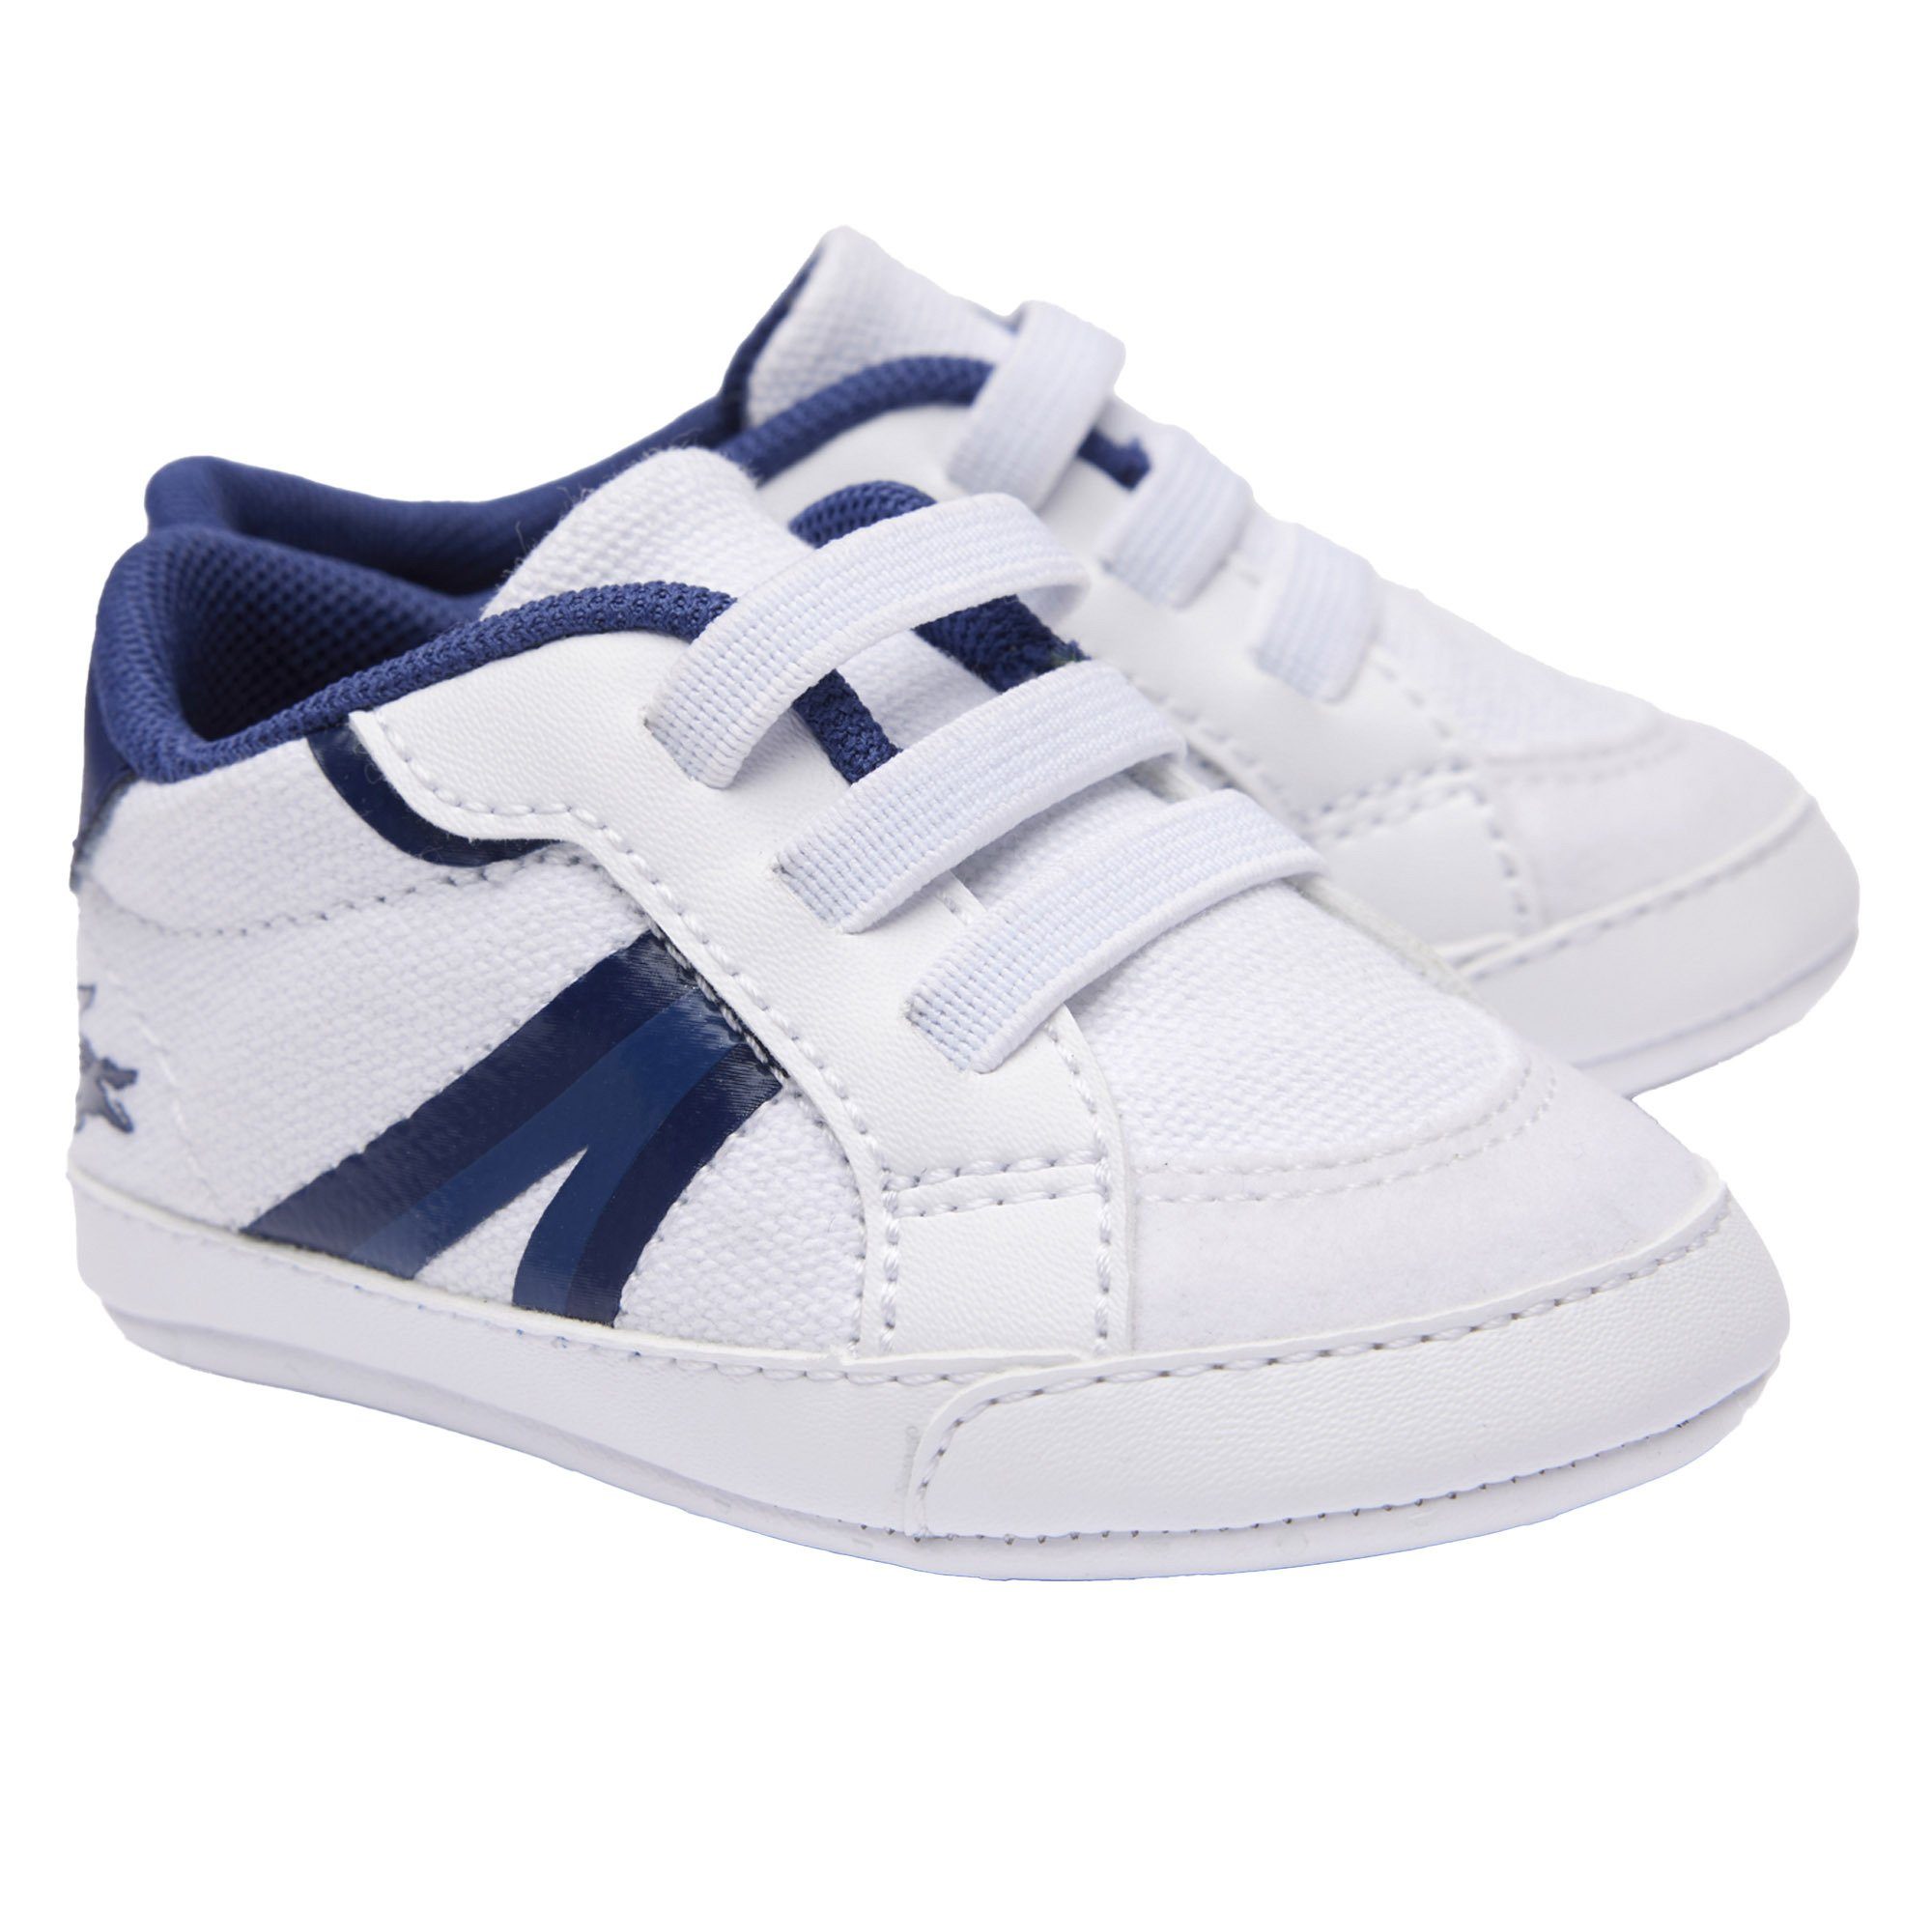 Lacoste Baby Schuhe - L004 Cub, Krabbelschuhe, Sneaker, Krabbelschuh Weiß/Blau